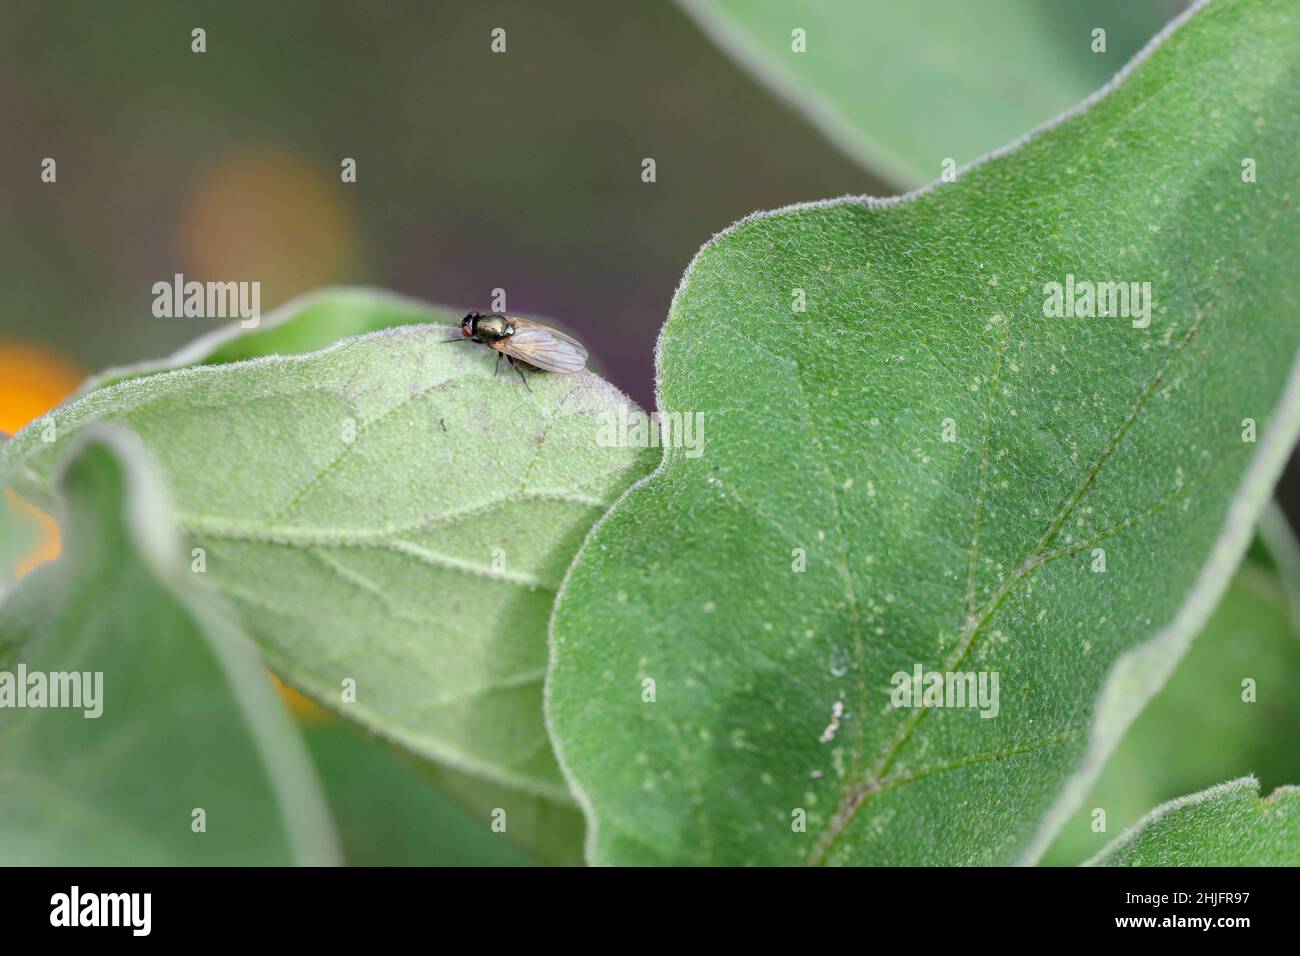 Calliopum ist eine Gattung kleiner Fliegen der Familie Lauxaniidae. Ein Insekt, das auf einem Blatt ruht. Stockfoto